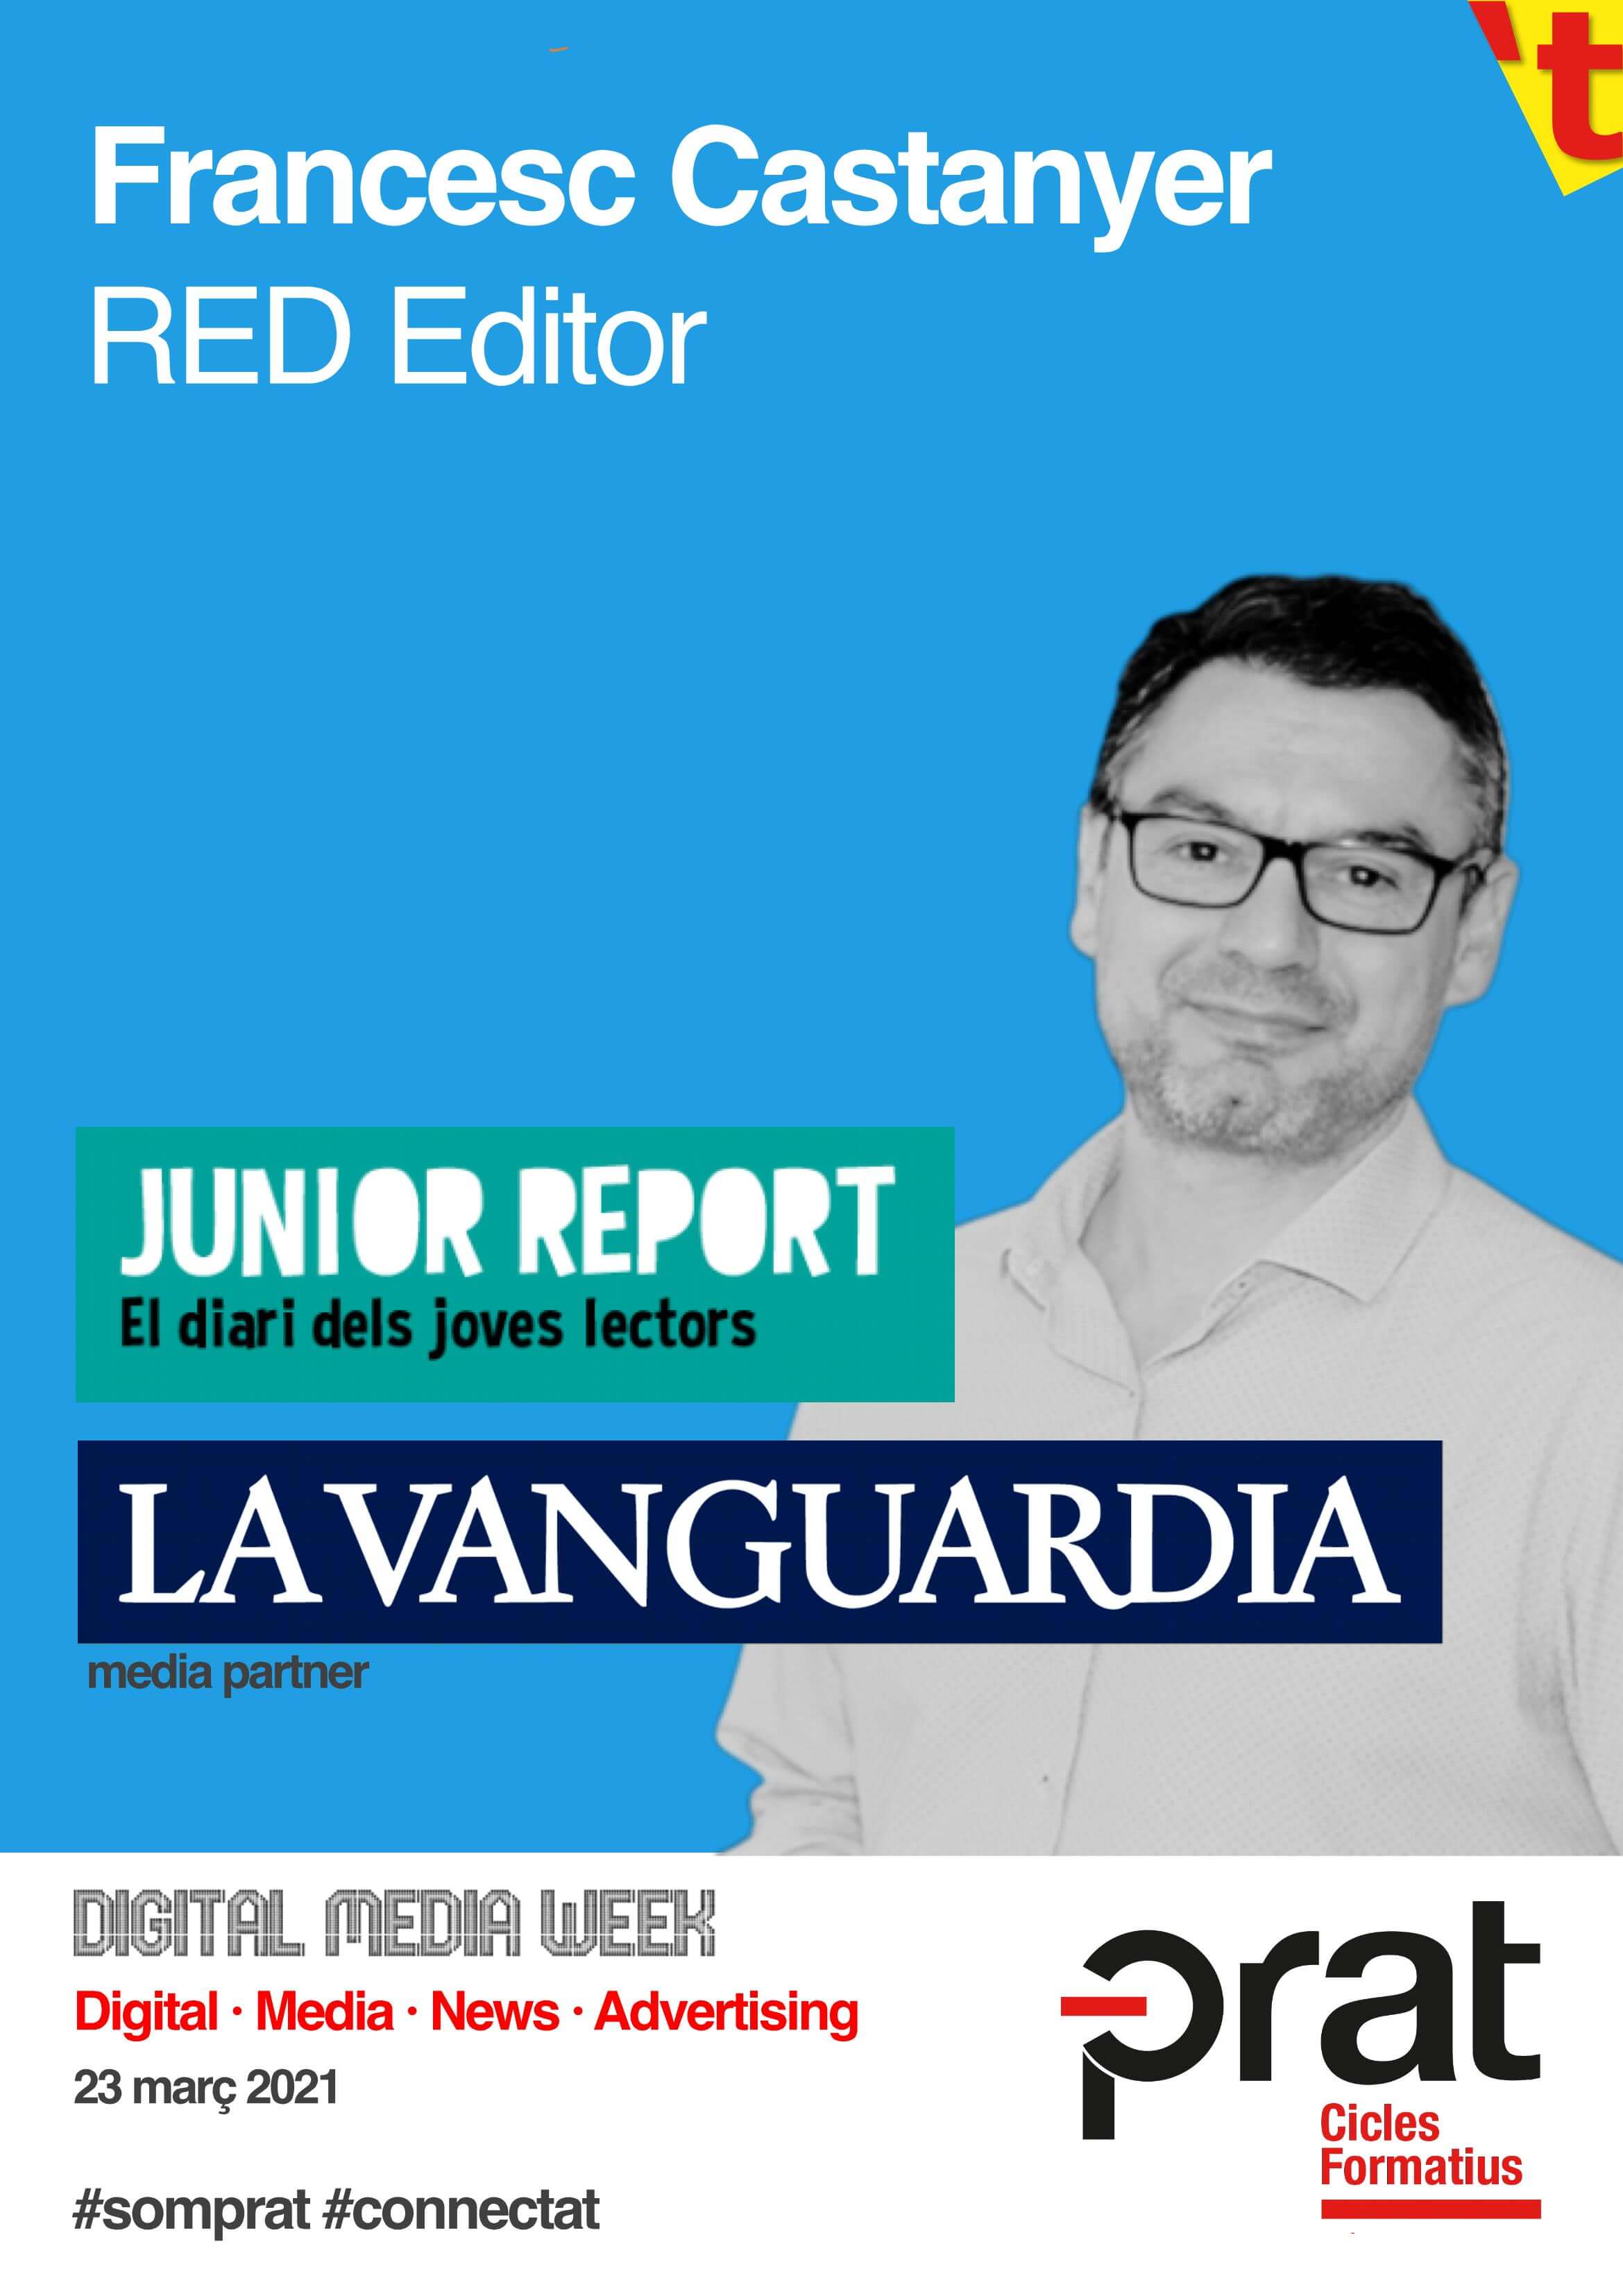 Digital Media Week: Junior Report i La Vanguardia - Cicle Formatiu de Grau Superior de Màrqueting i Publicitat a Prat Educació